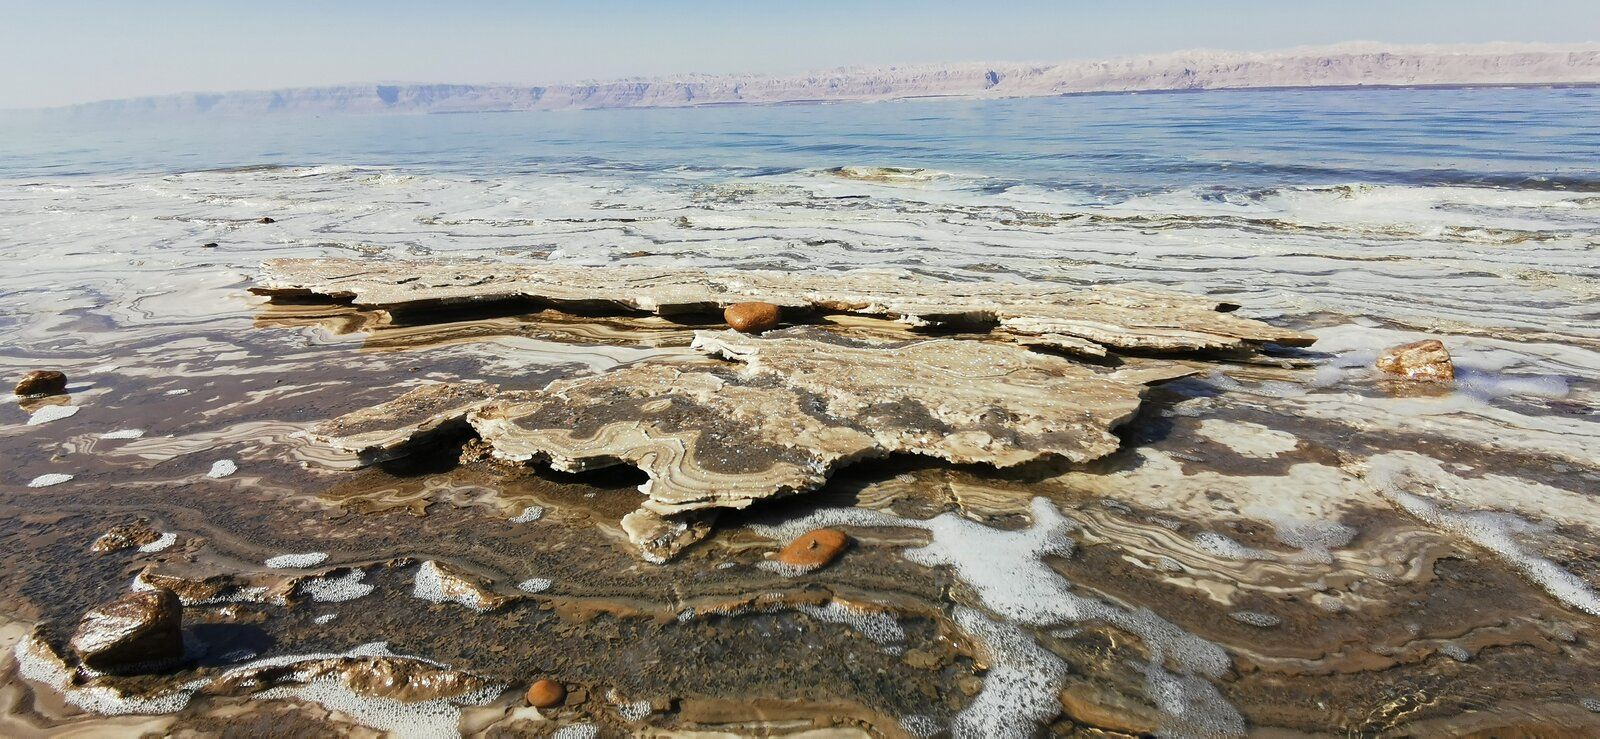 22 Dead Sea.jpg